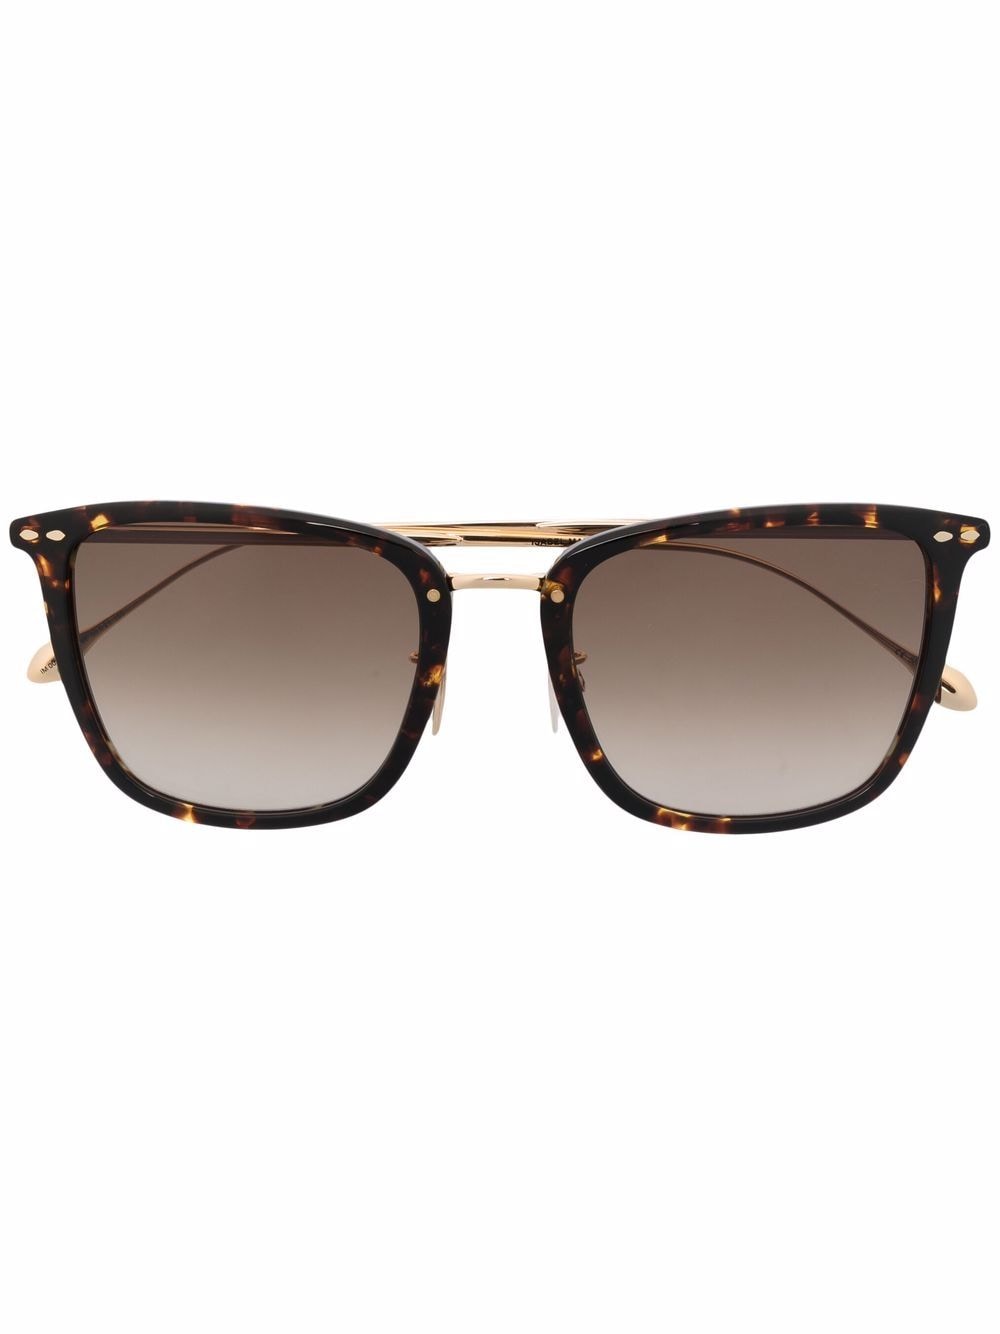 Isabel Marant Eyewear tortoiseshell-frame sunglasses - Gold von Isabel Marant Eyewear